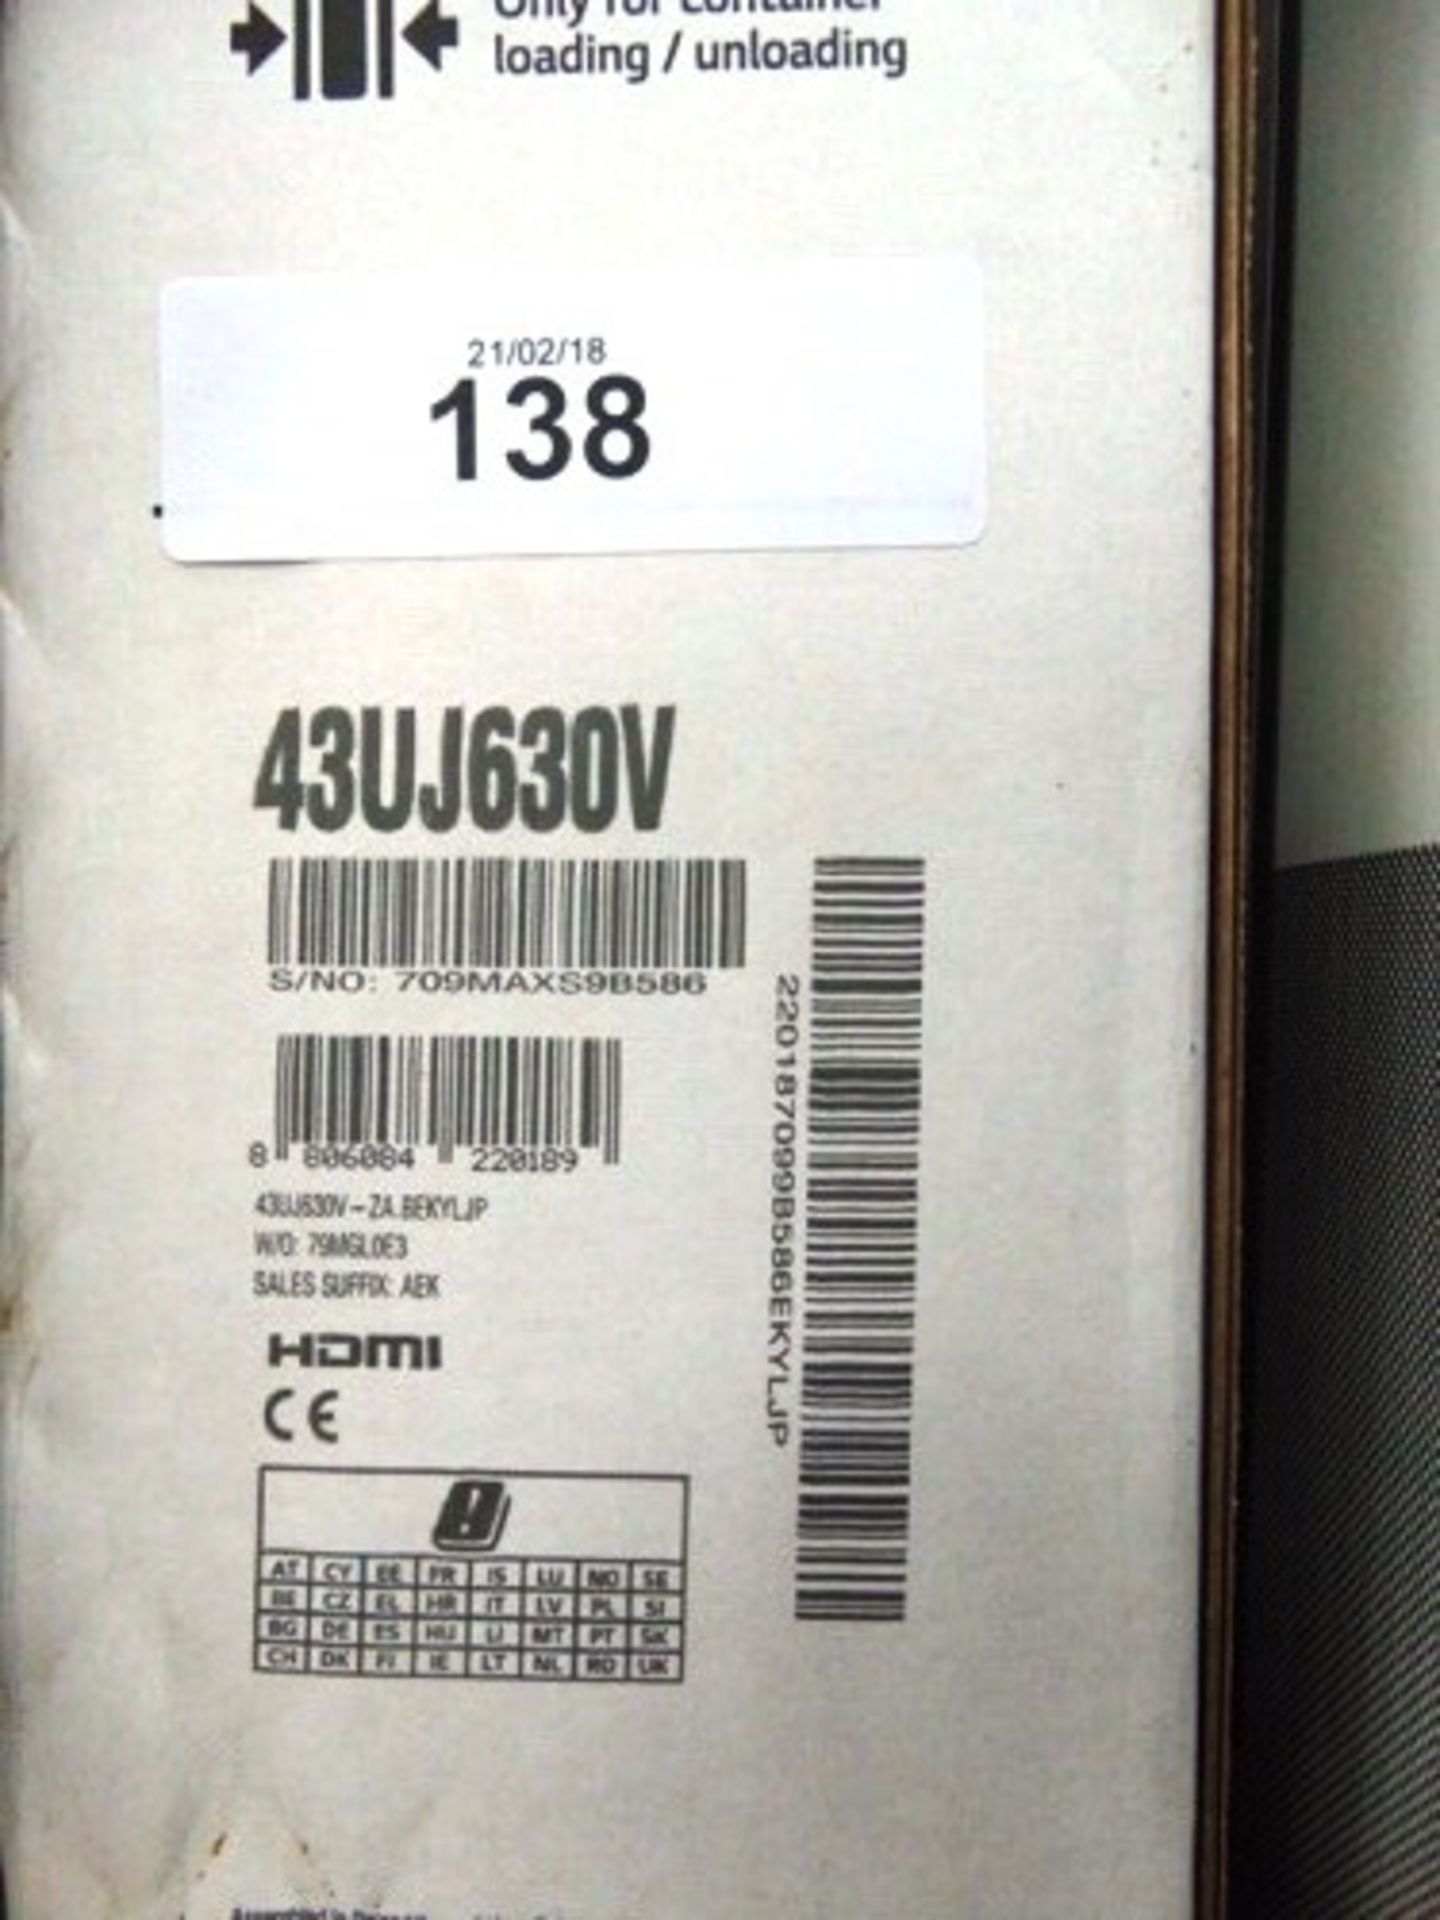 1 x LG, 43", 4K UHD TV model number: 43UJ630V - Sealed new in box (ESB7)